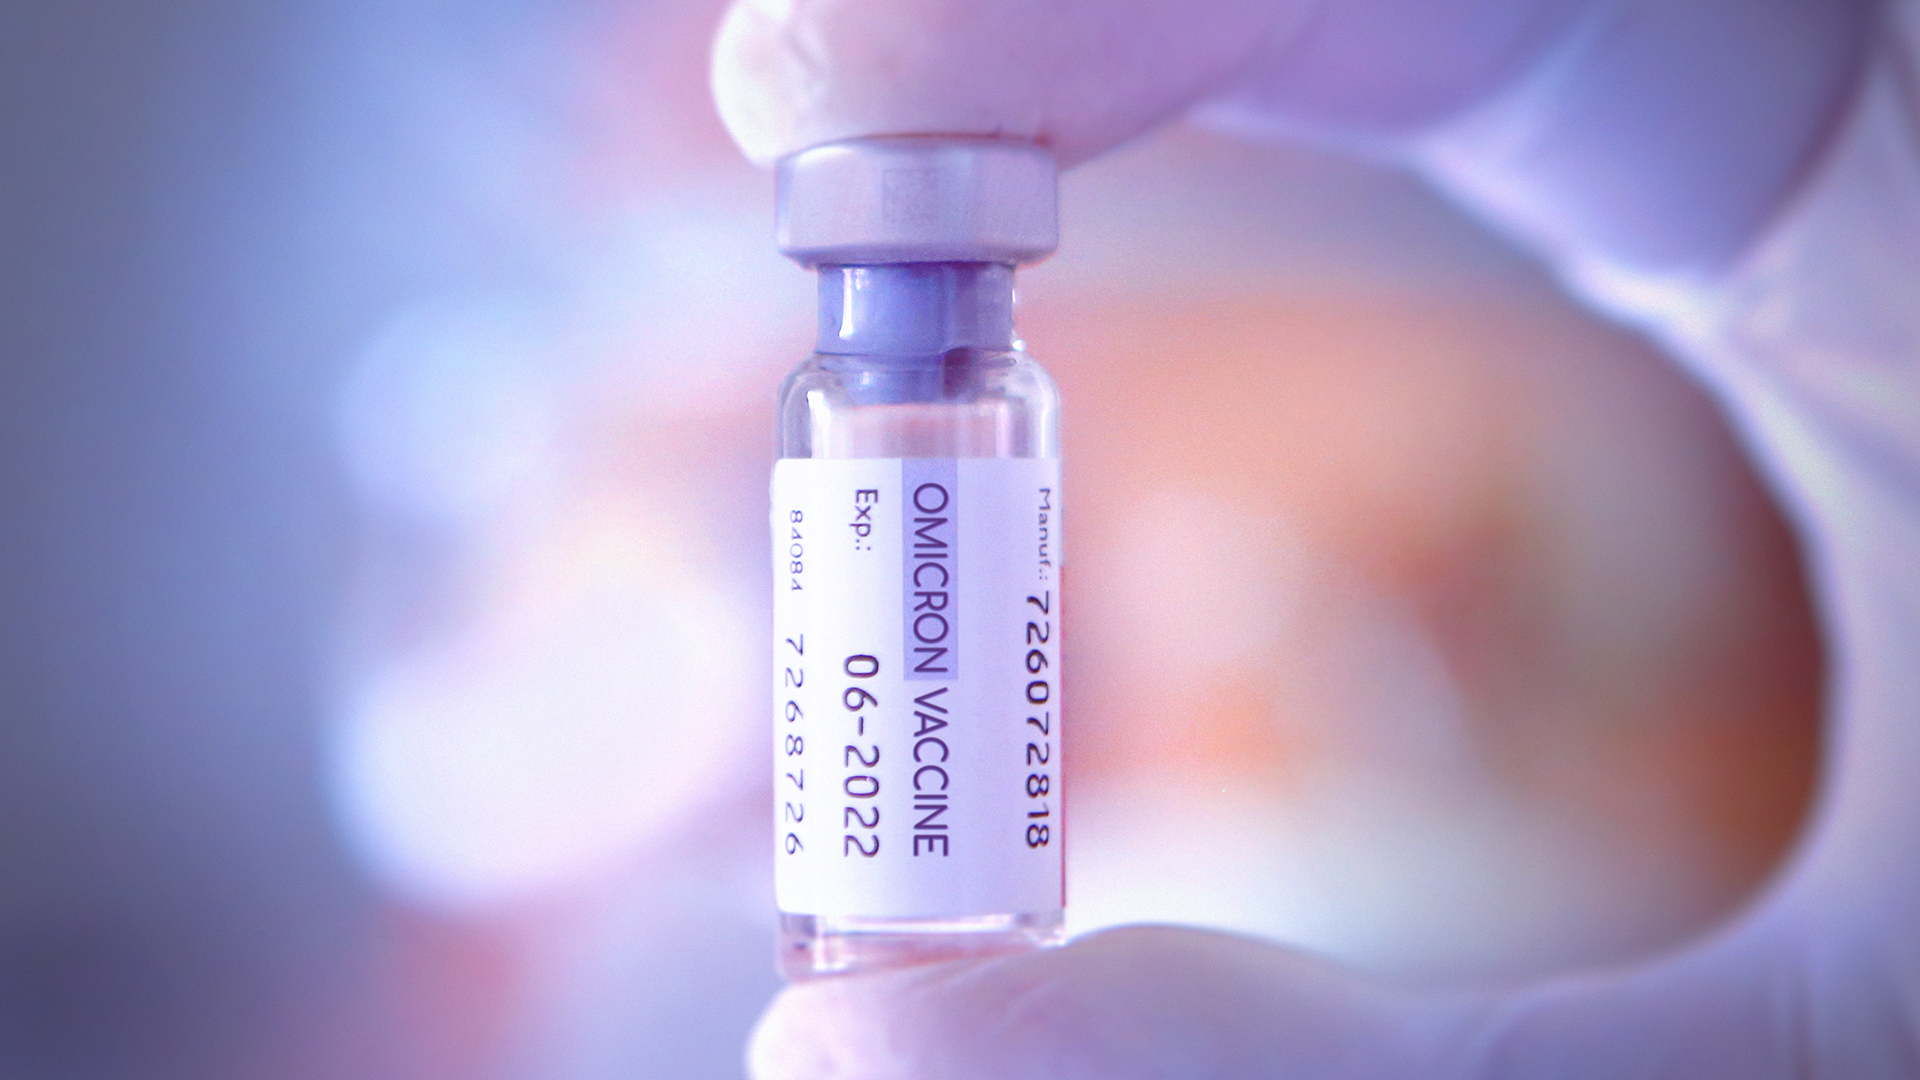 Les experts soulignent l'importance d'appliquer les doses disponibles pour maintenir la protection contre le coronavirus (Getty)